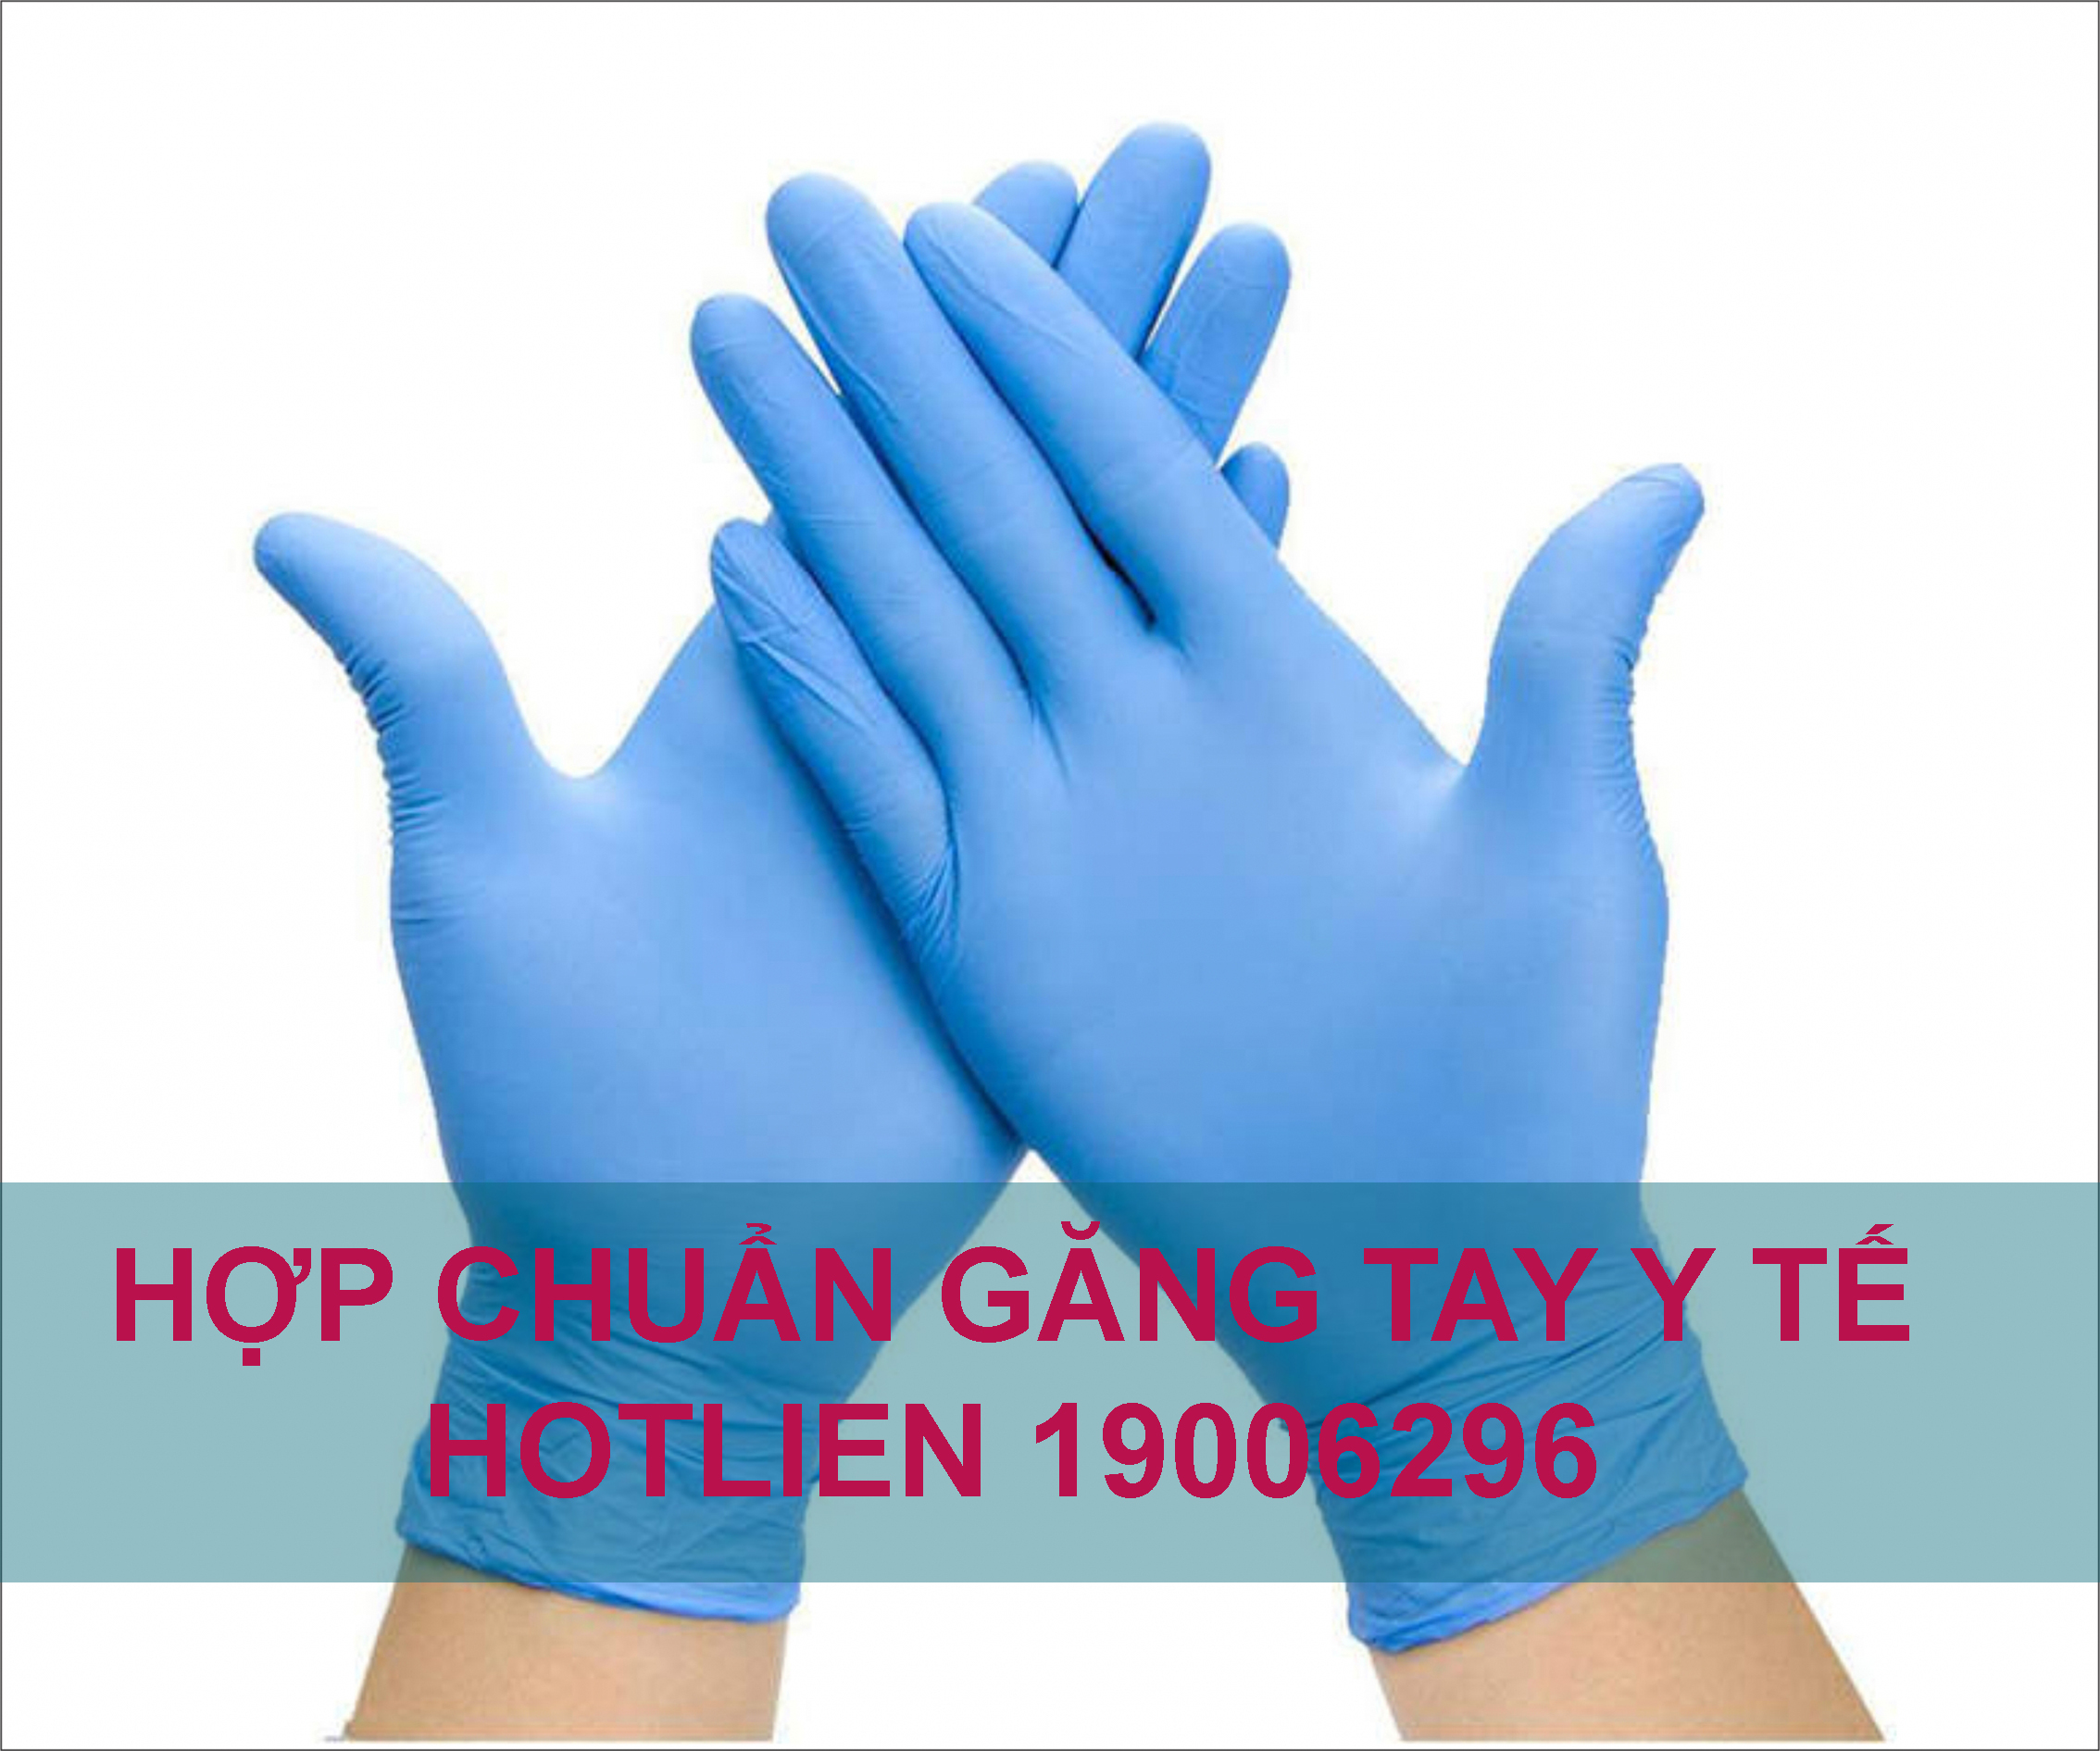 Dịch vụ hợp chuẩn găng tay cao su y tế, kháng khuẩn TCVN 6344:2007 ( ISO 10282:2002)